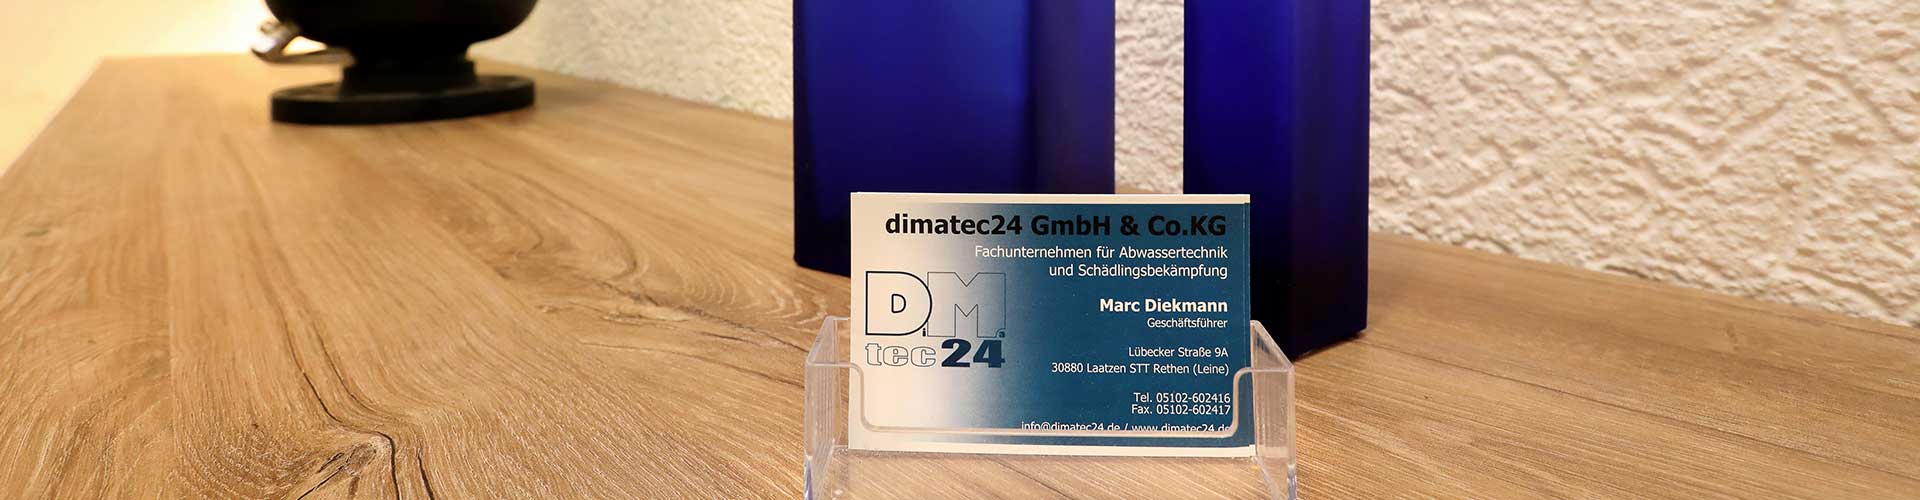 Datenschutzerklärung der Firma dimatec24 Abwassertechnik GmbH & Co KG aus Laatzen bei Hannover